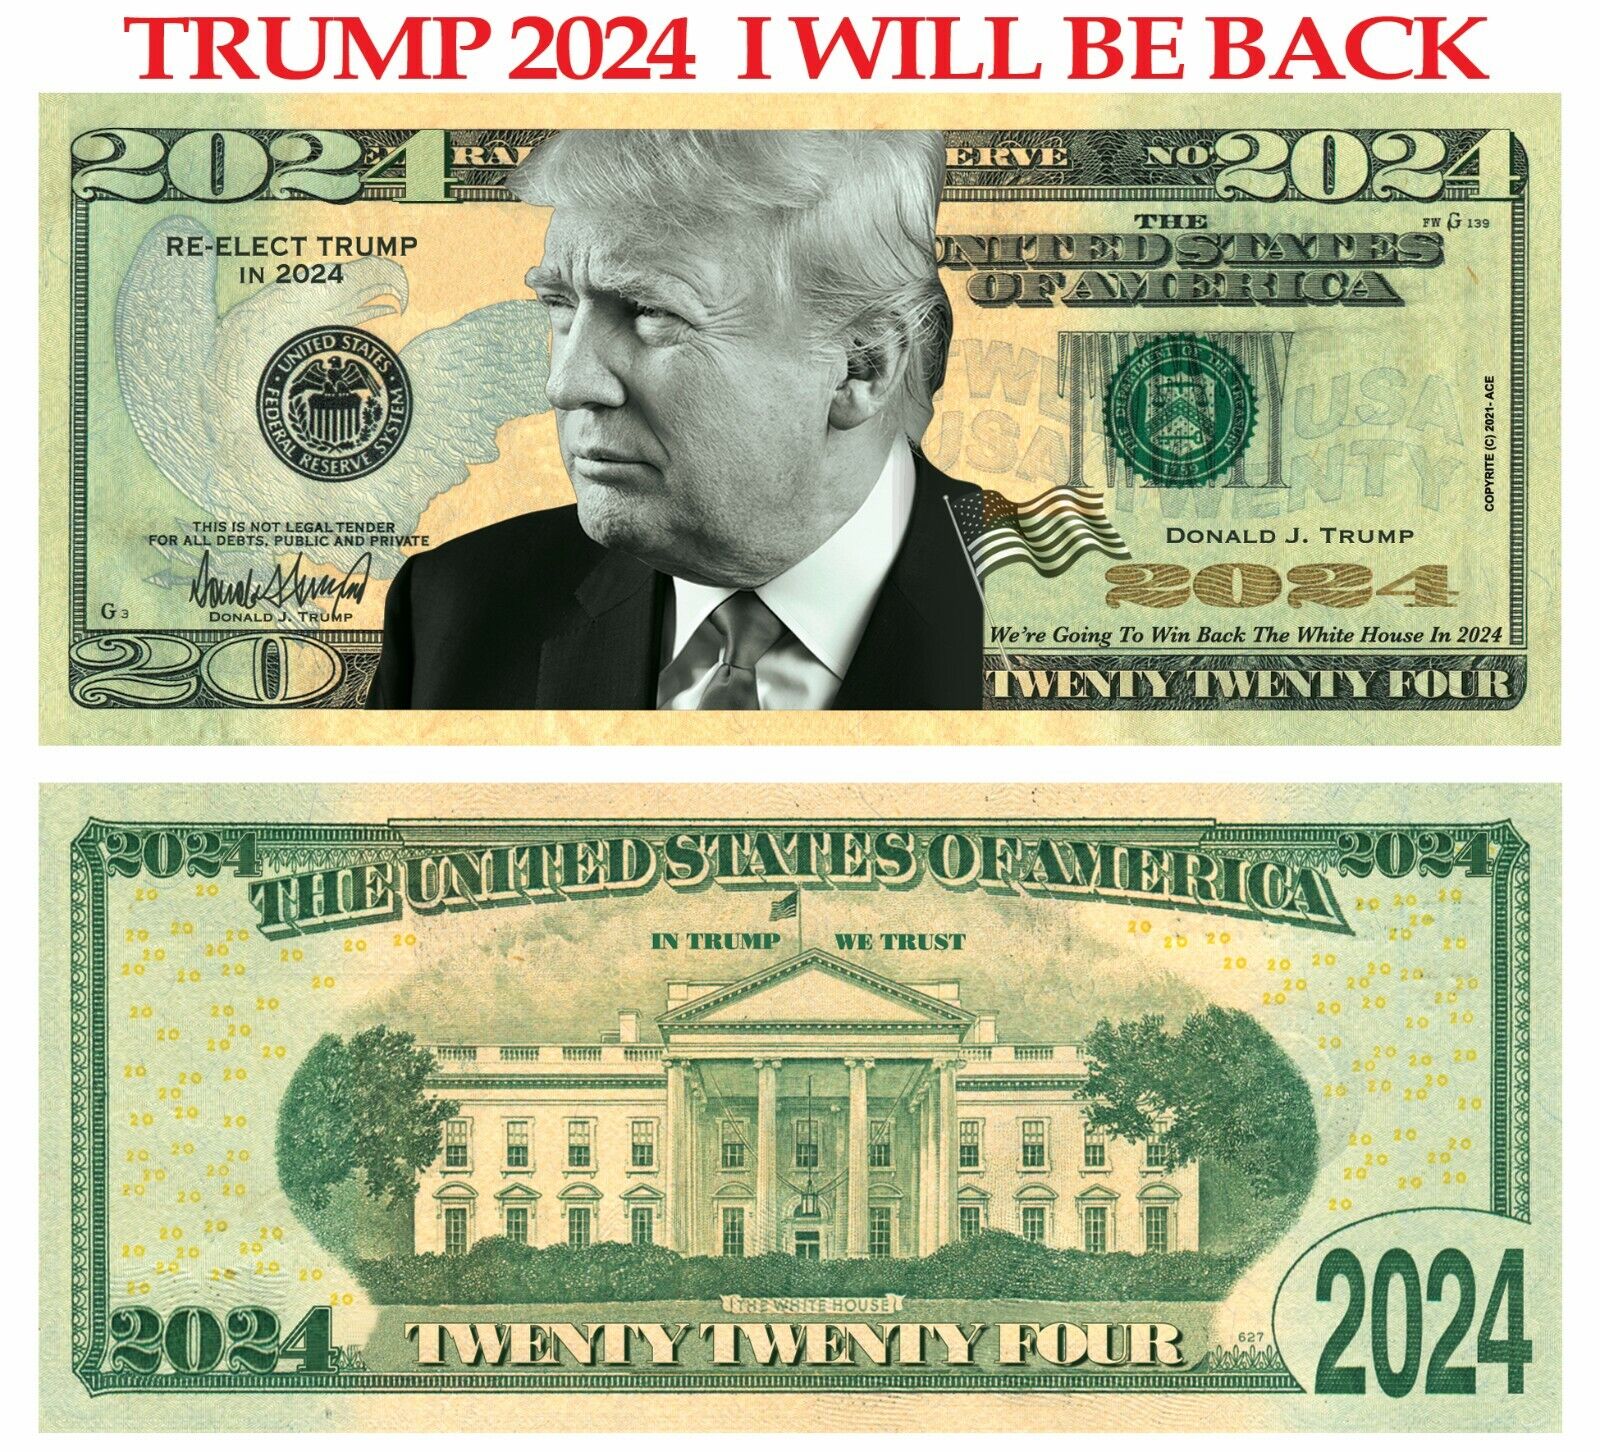 100 pack Trump 2024 I Will Be Back Dollar Bills Funny Money Maga